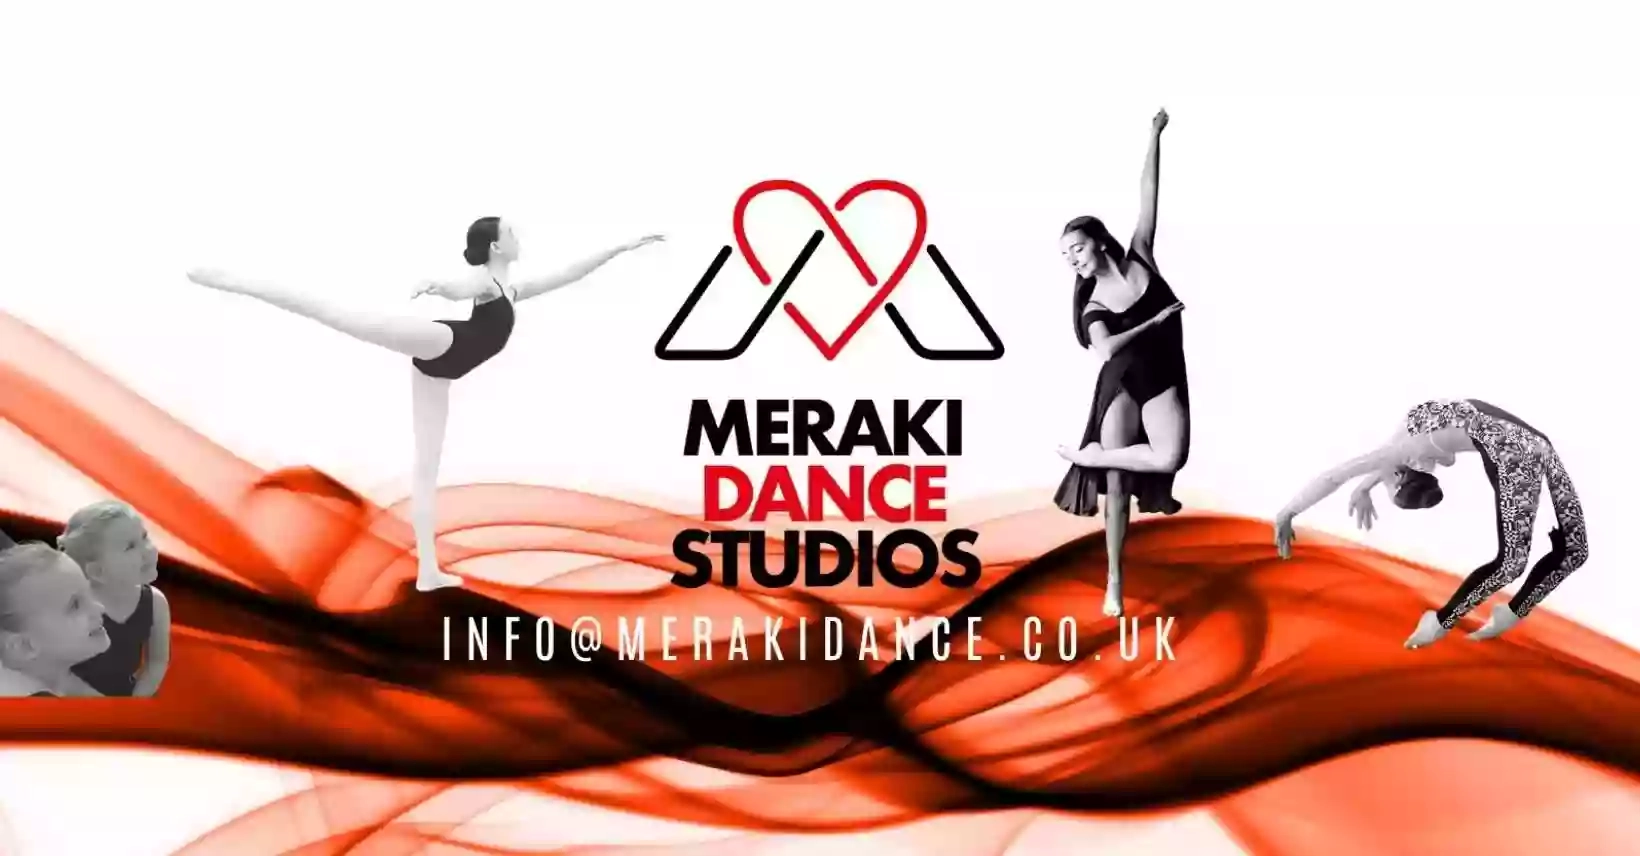 Meraki Dance Studios